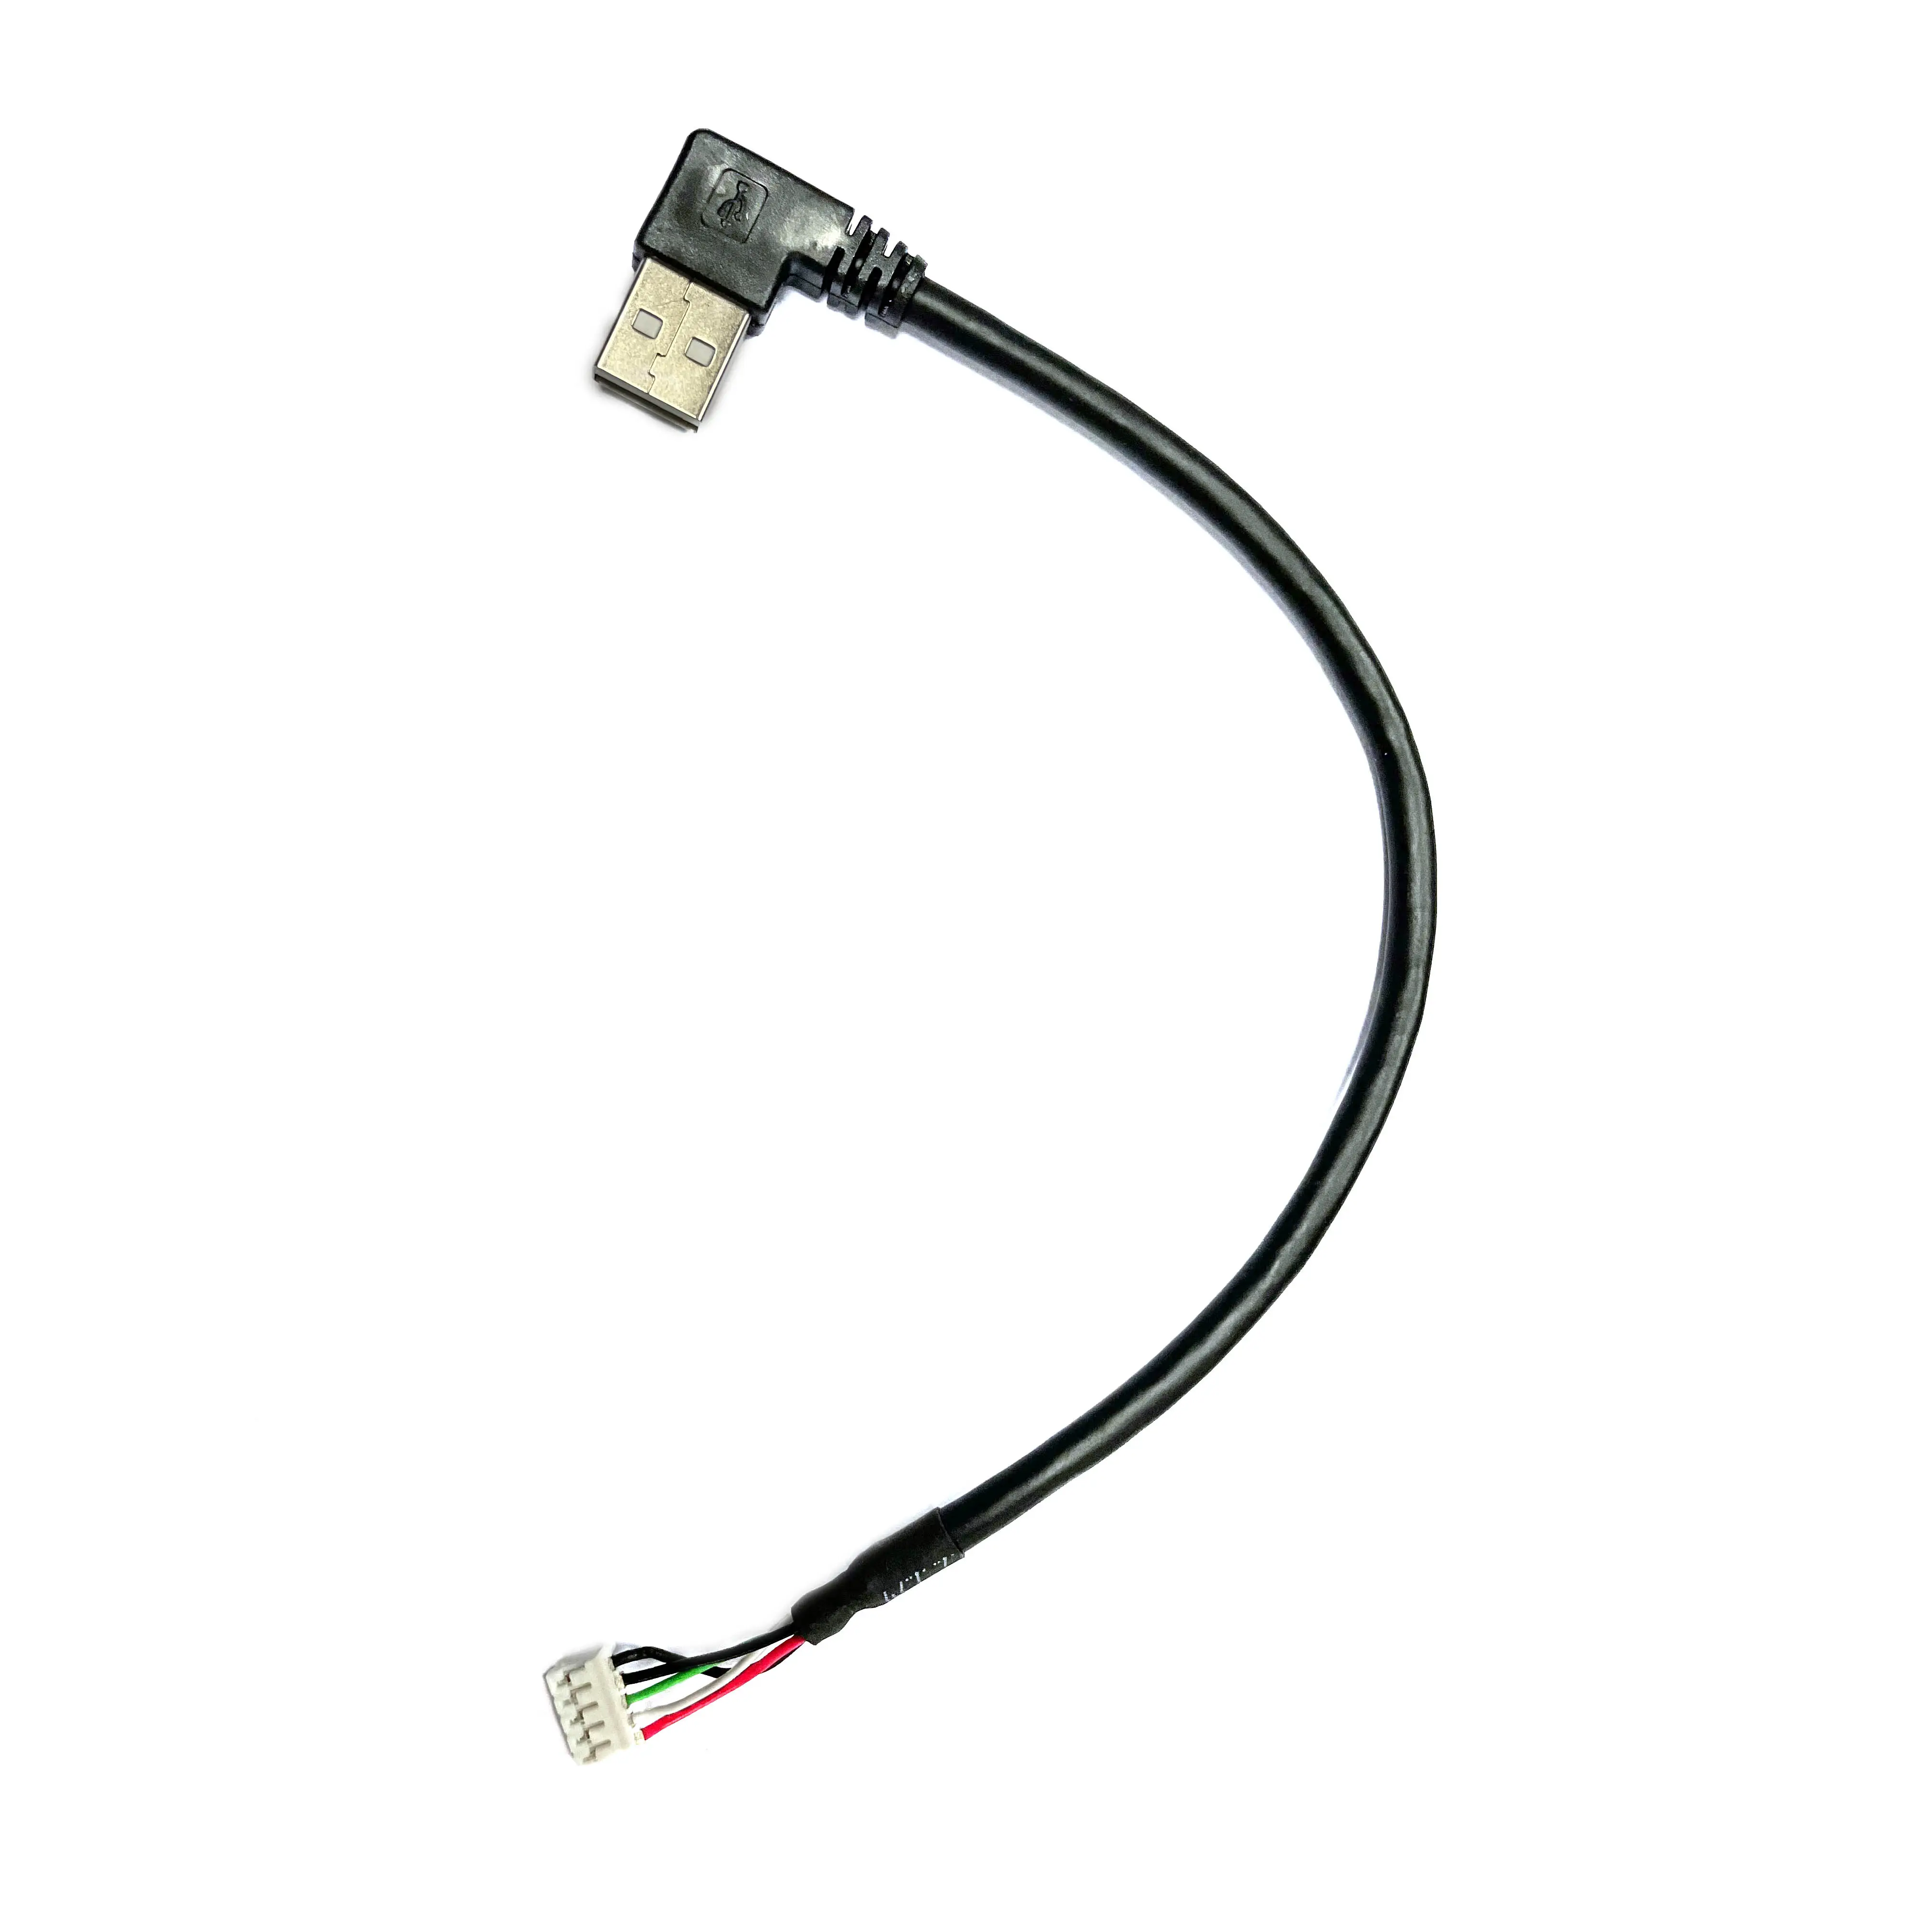 Aangepaste Hoge Kwaliteit Usb A Male Connector Naar 5-Pin Molex Kabel Montage/Andere Draad En Kabel Schorsing componenten